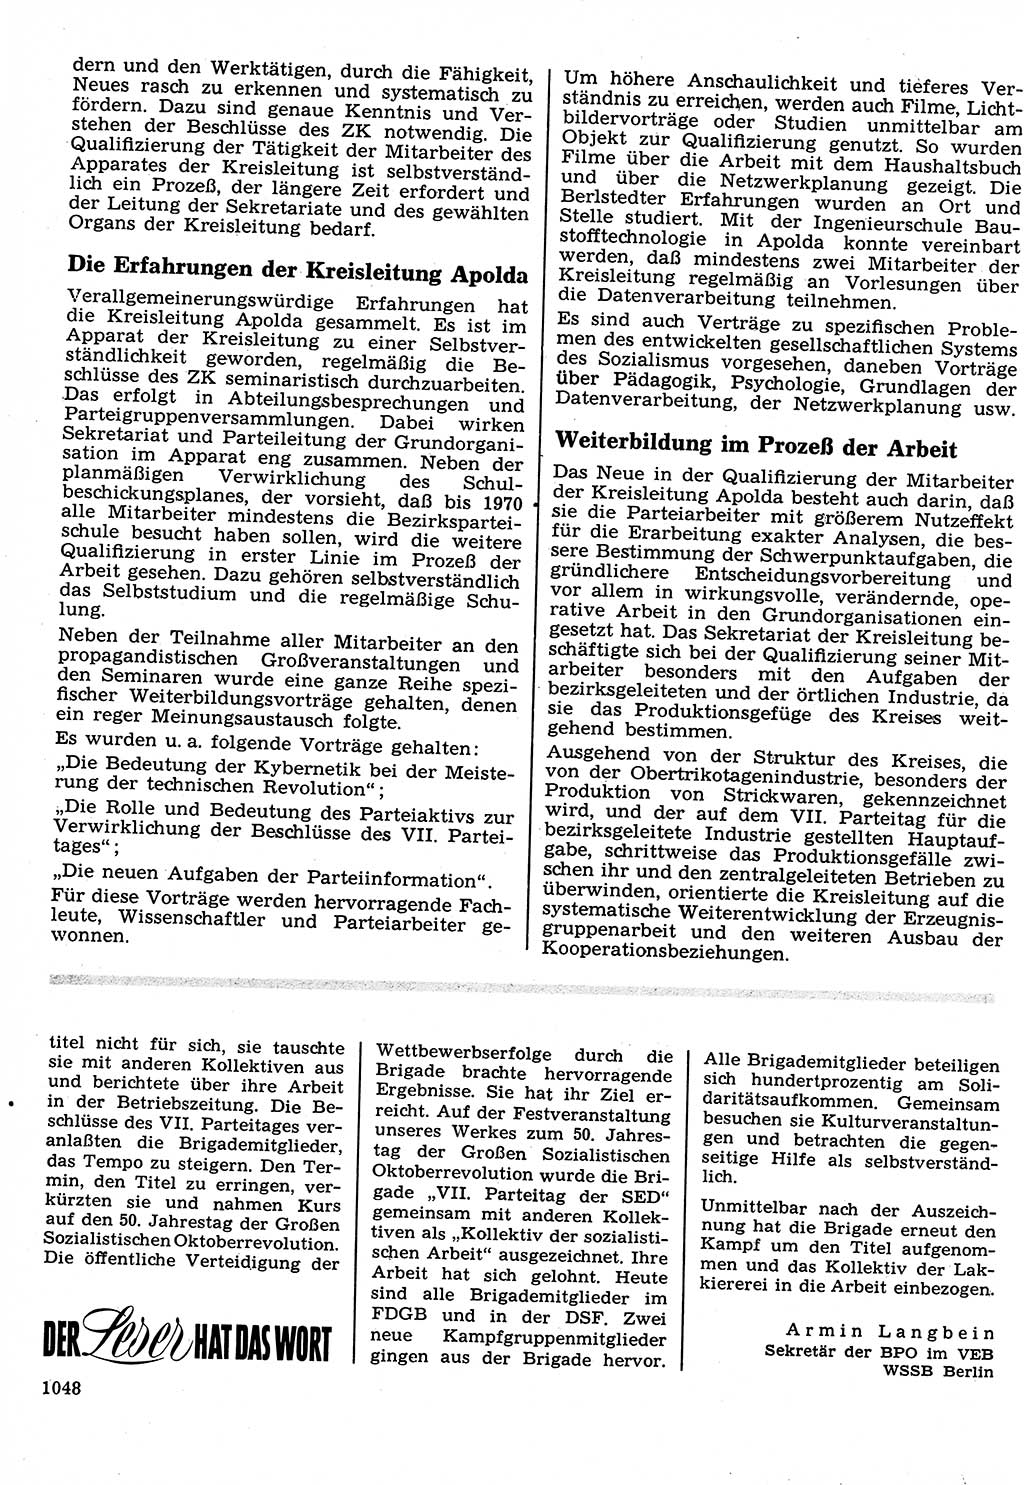 Neuer Weg (NW), Organ des Zentralkomitees (ZK) der SED (Sozialistische Einheitspartei Deutschlands) für Fragen des Parteilebens, 22. Jahrgang [Deutsche Demokratische Republik (DDR)] 1967, Seite 1048 (NW ZK SED DDR 1967, S. 1048)